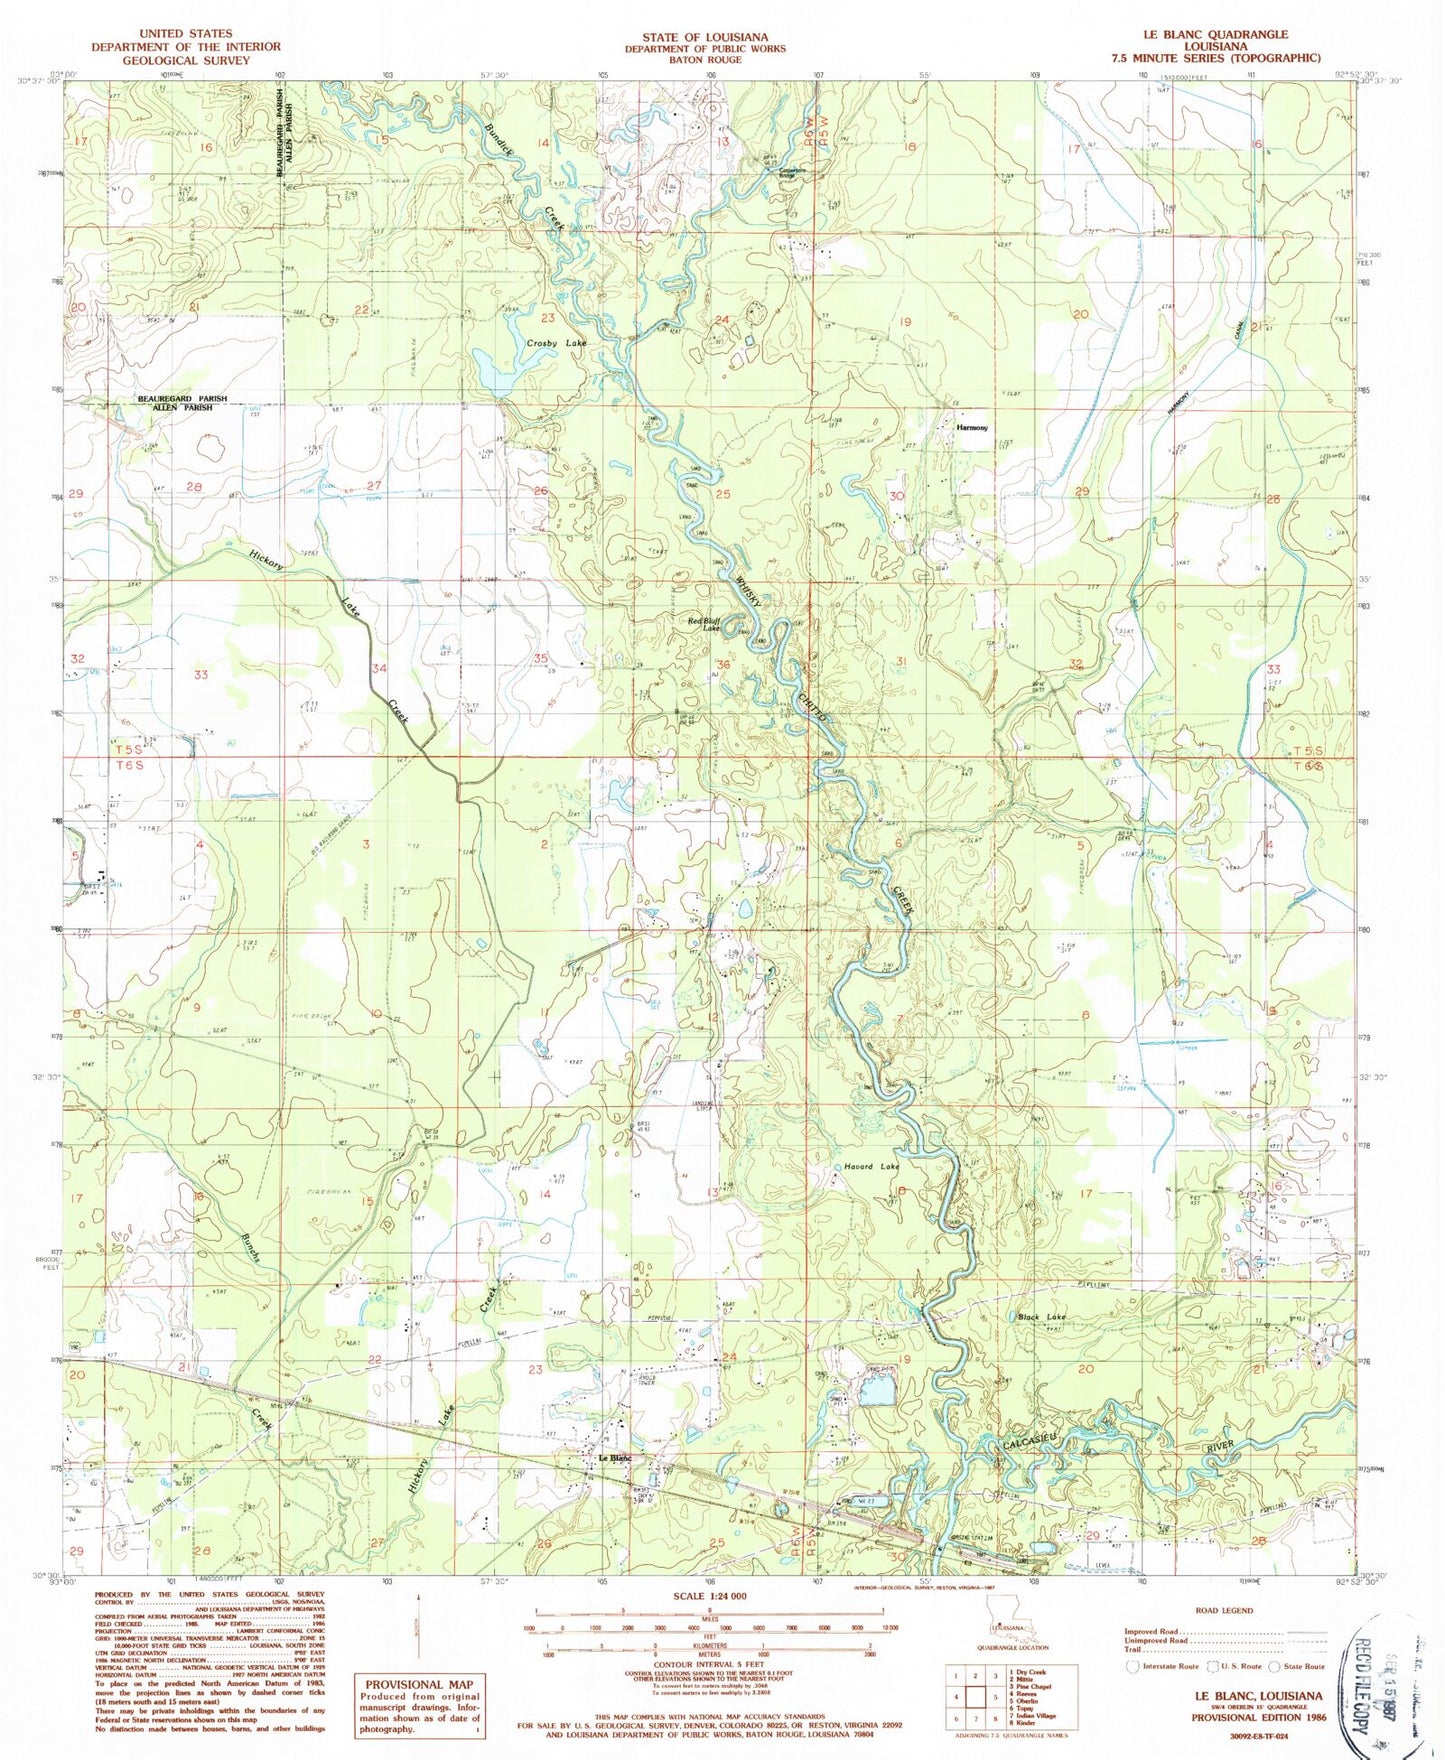 Classic USGS Le Blanc Louisiana 7.5'x7.5' Topo Map Image